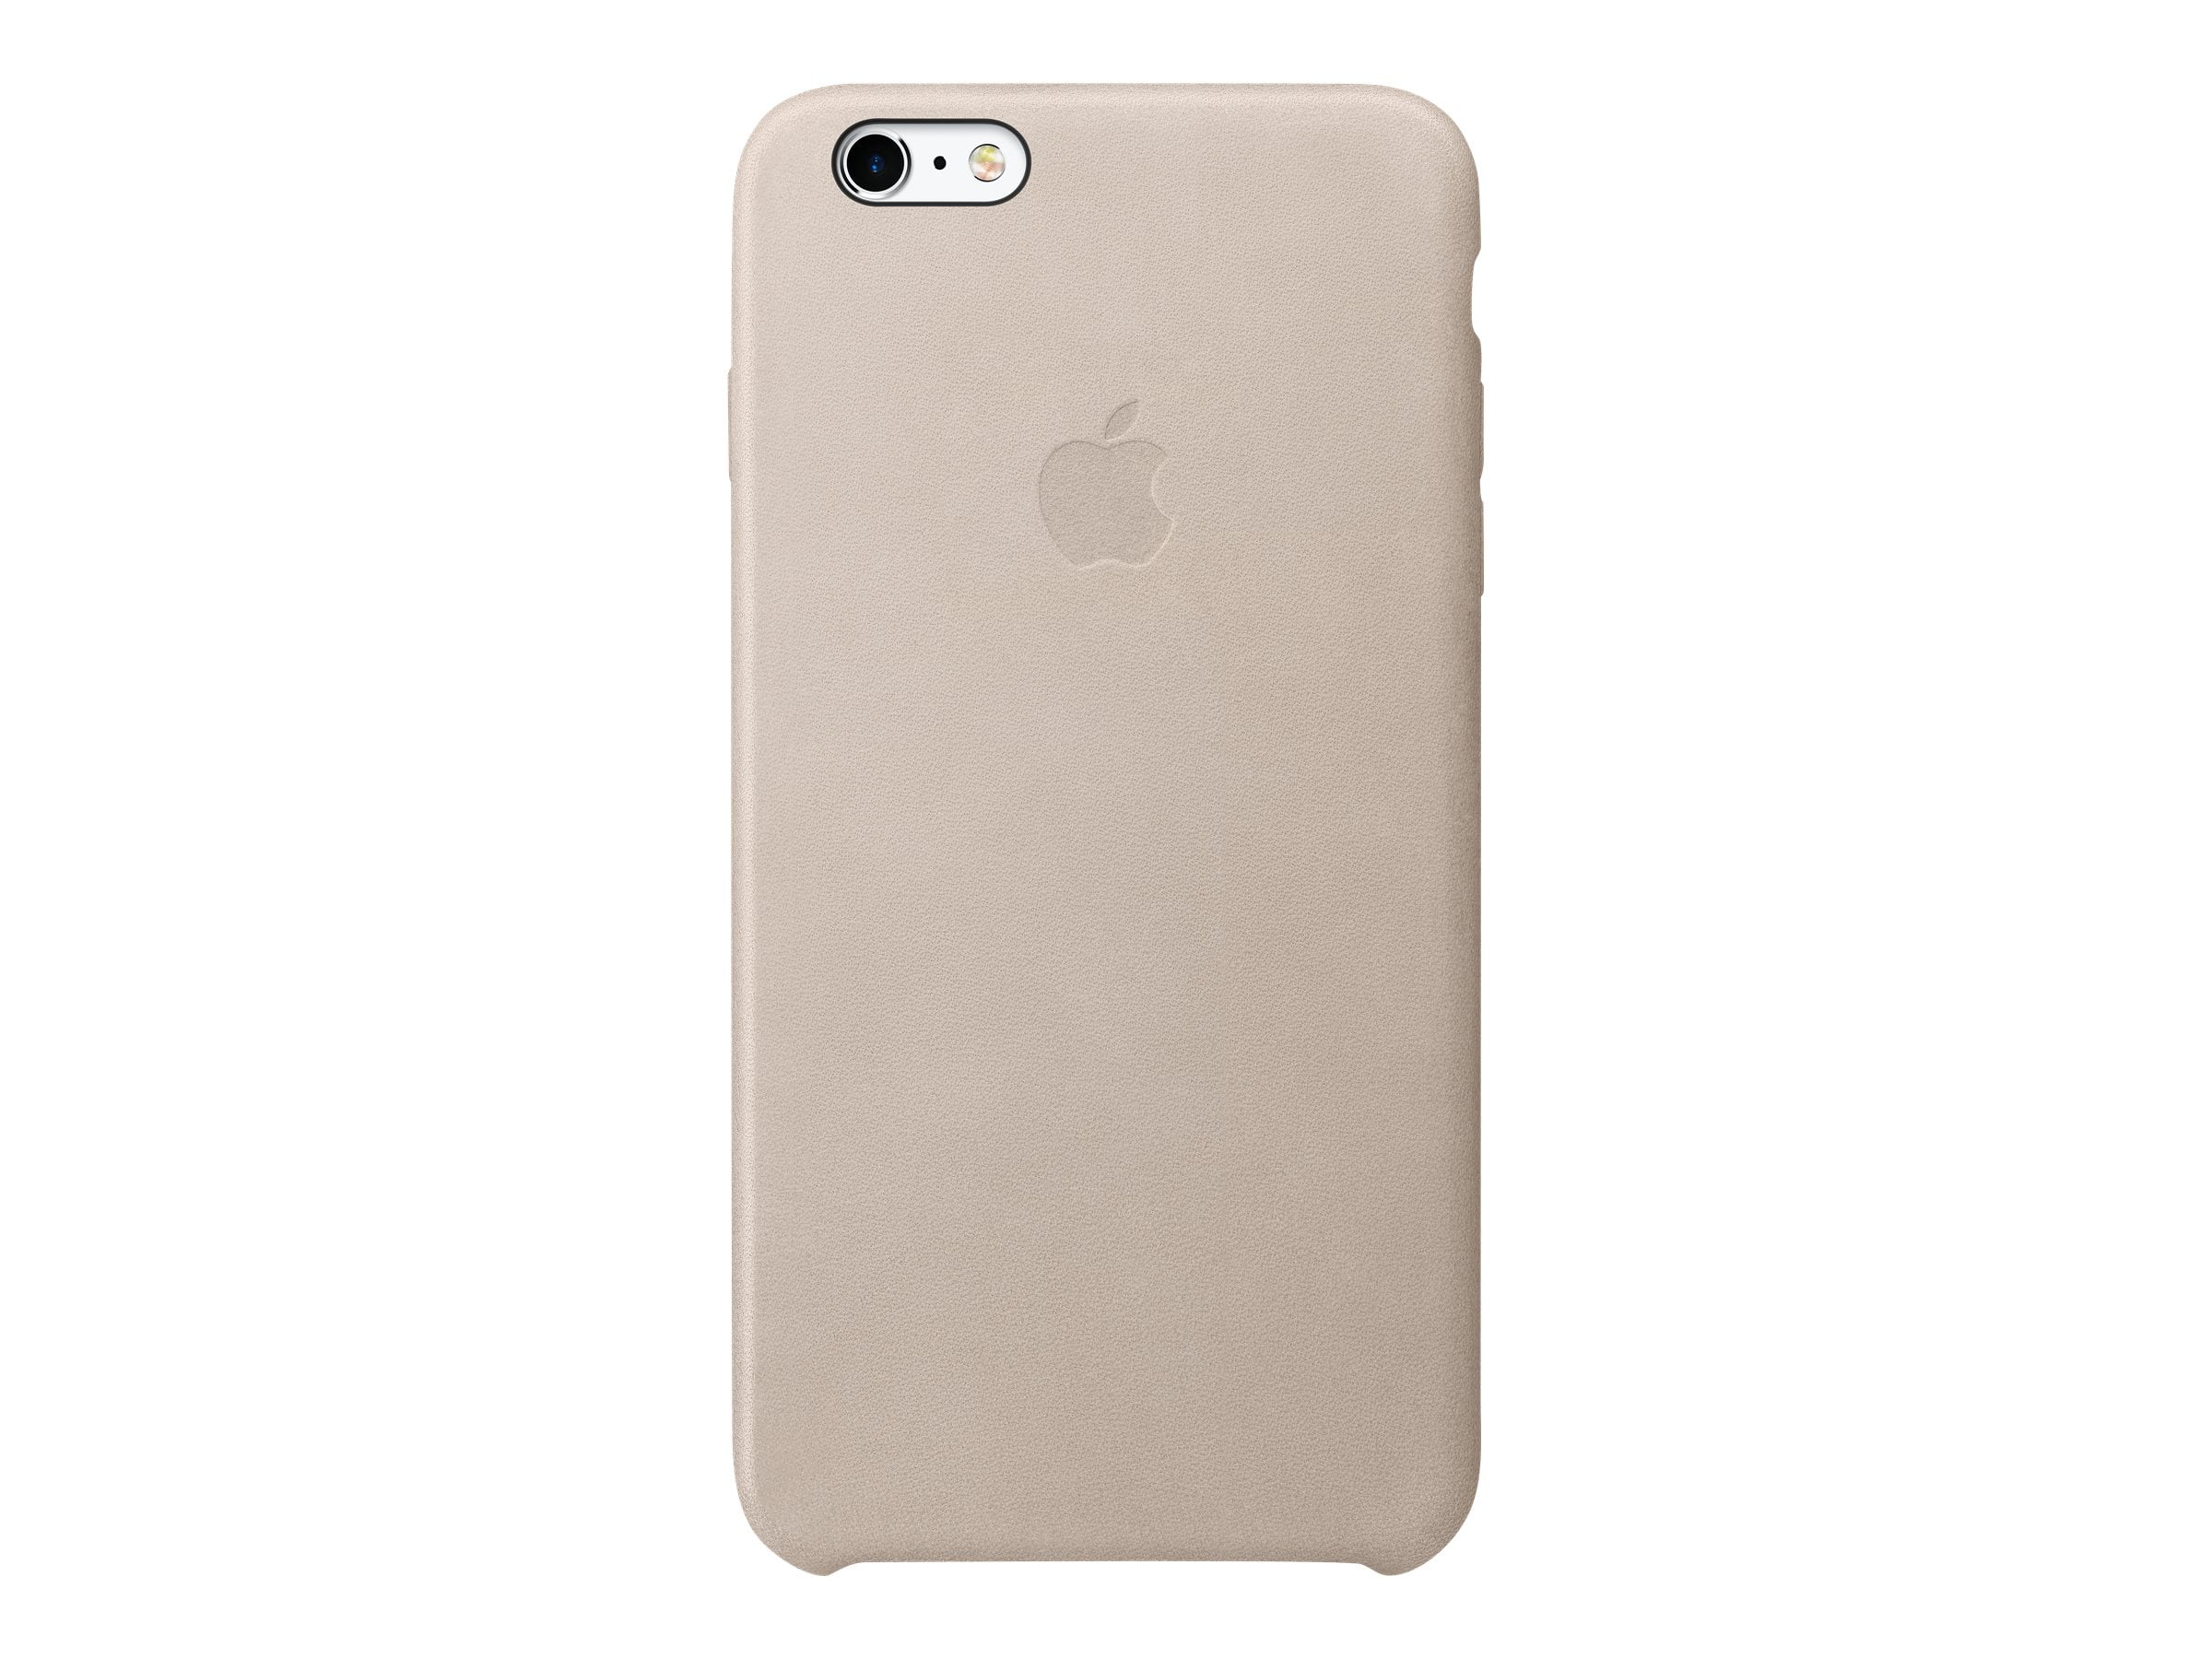 Voorkomen Commotie Broers en zussen Apple Leather Case for iPhone 6s Plus and iPhone 6 Plus - Rose Gray -  Walmart.com